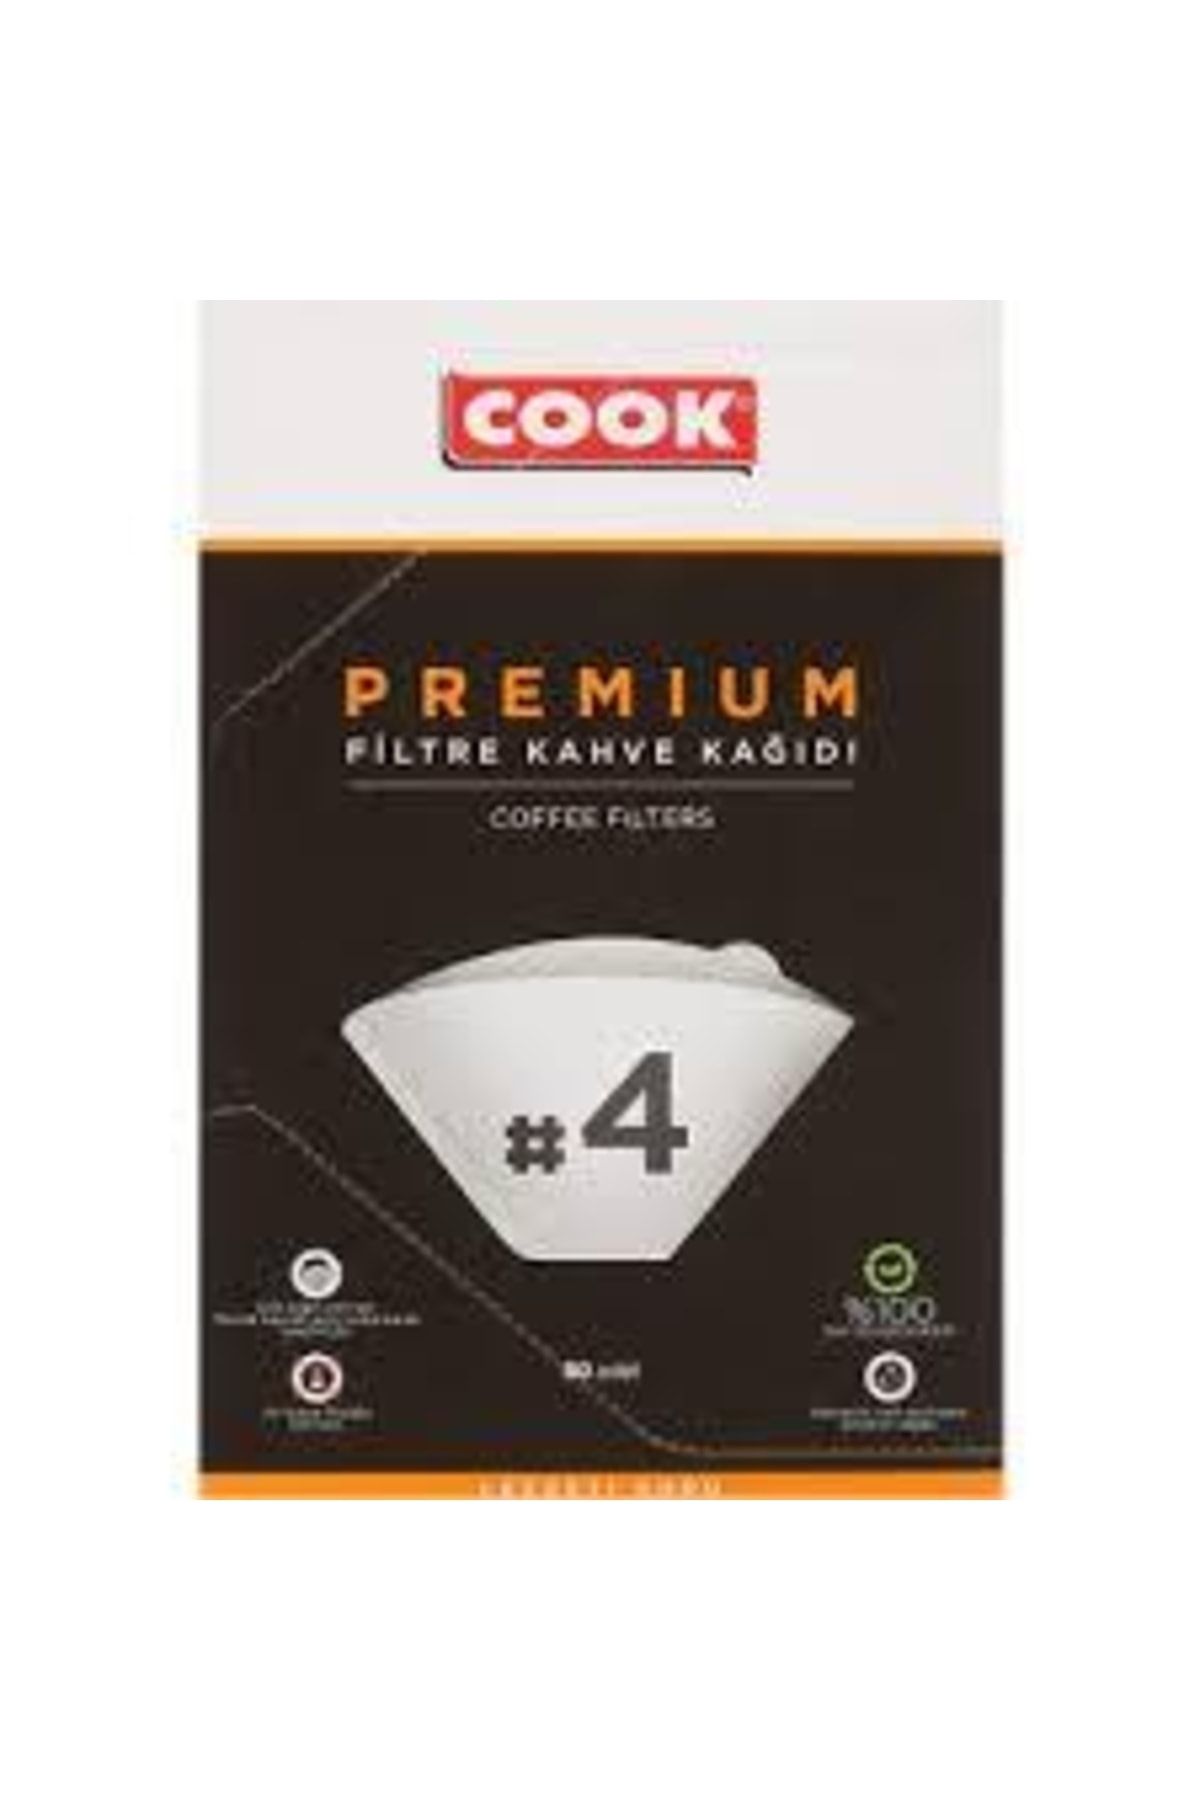 COOK Premium Filtre Kahve Kağıdı - No 4